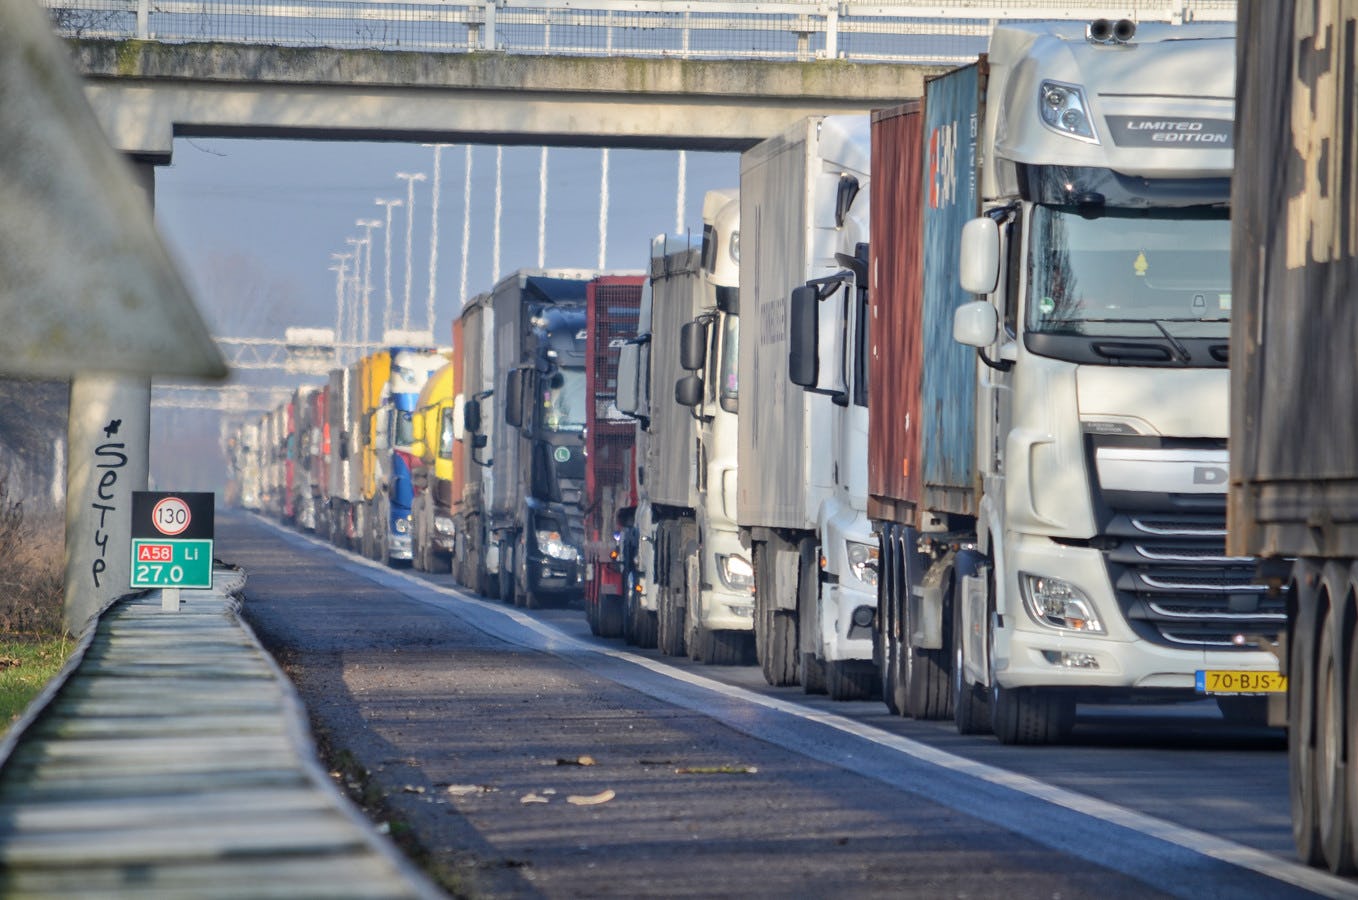 Verkoop vrachtwagens en bestelauto's stijgt, marktaandelen ongewijzigd